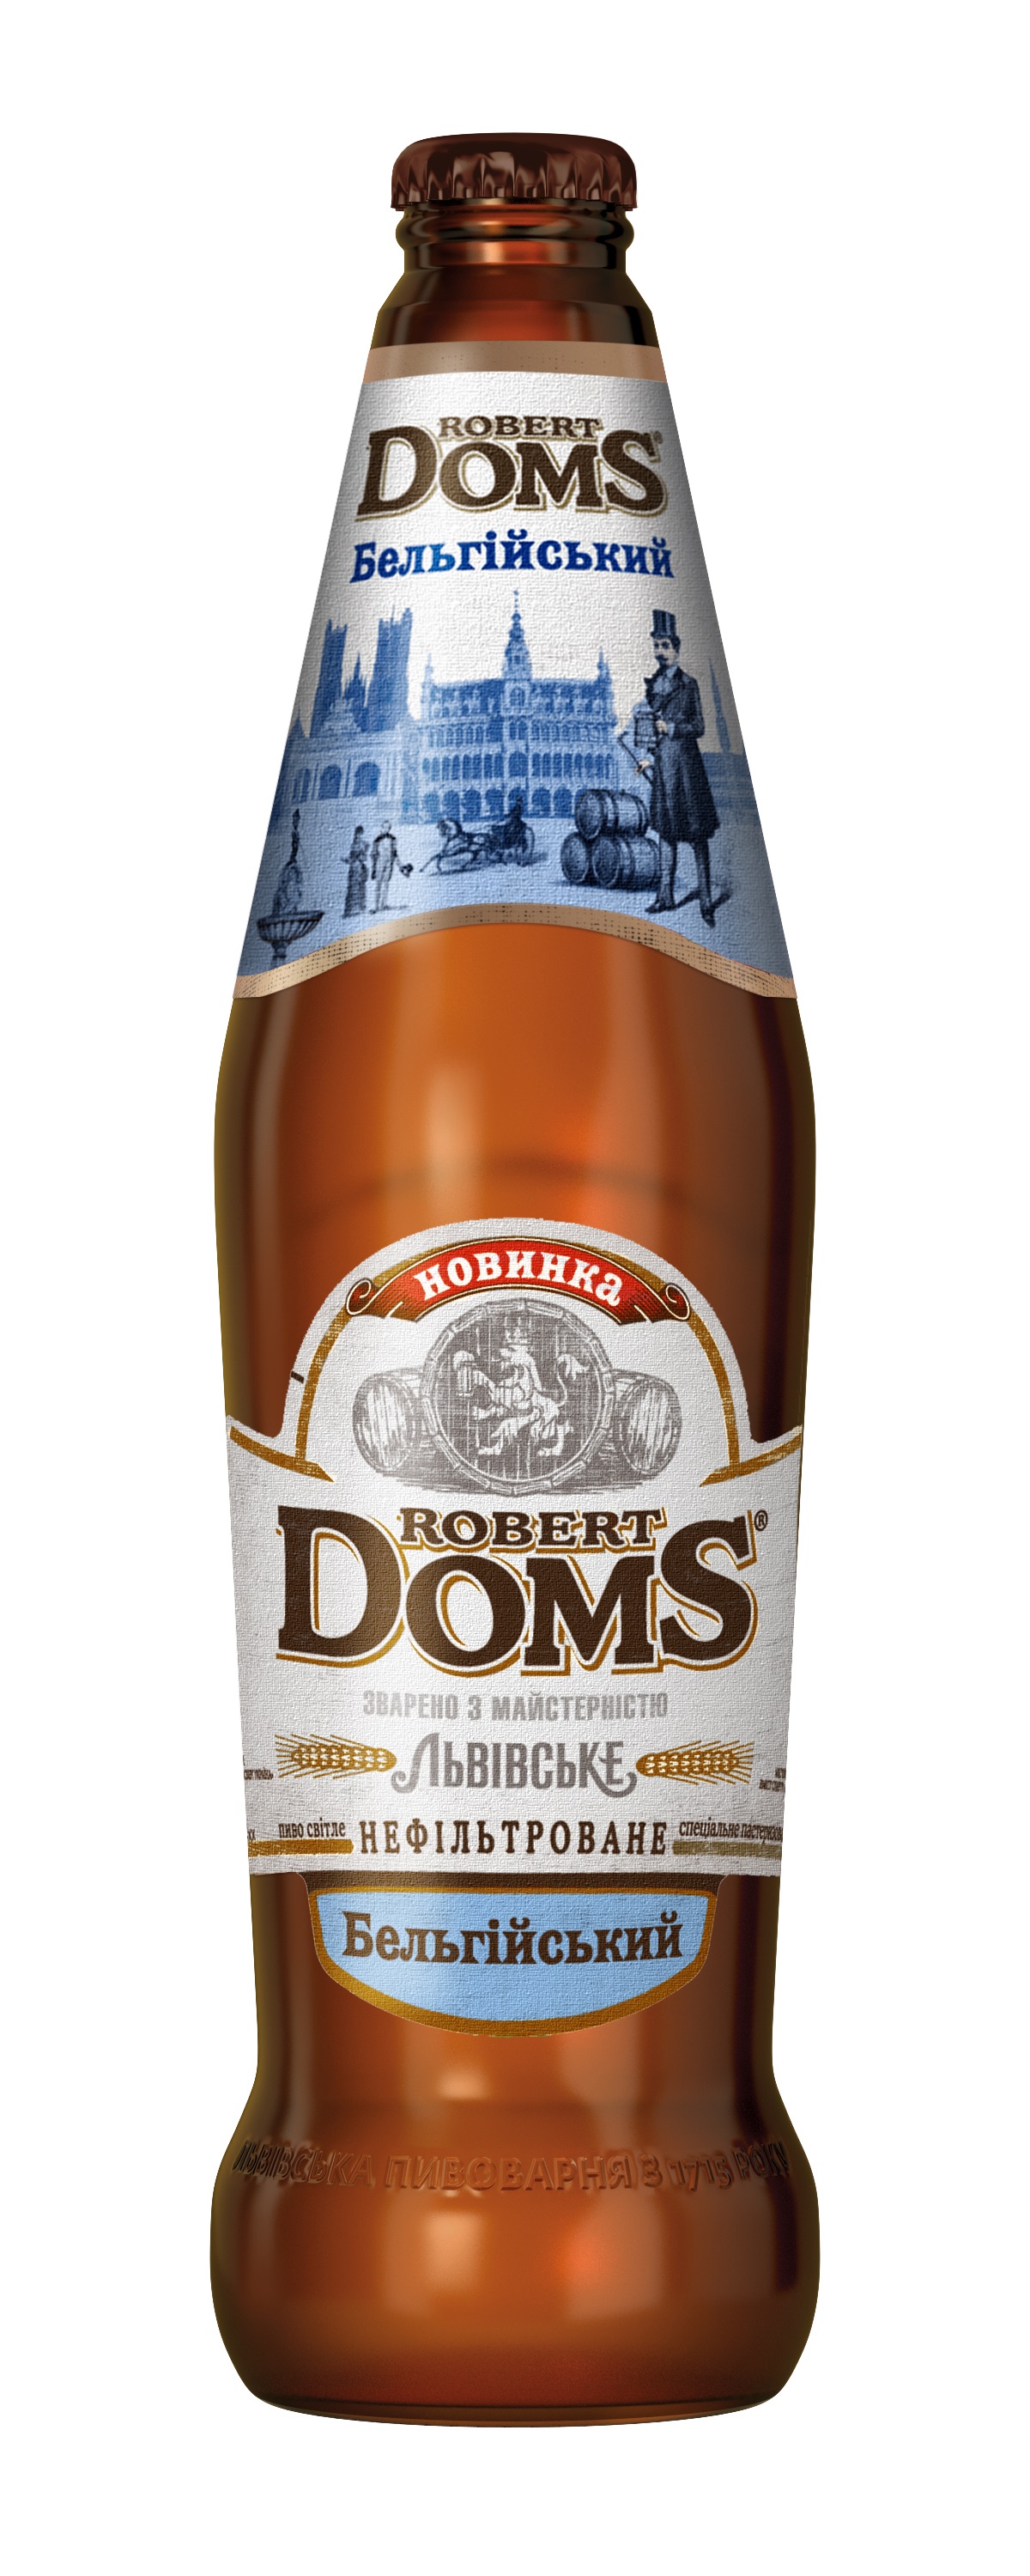 Robert Doms Бельгійський - новый сорт в линейке крафтового  пива Robert Doms